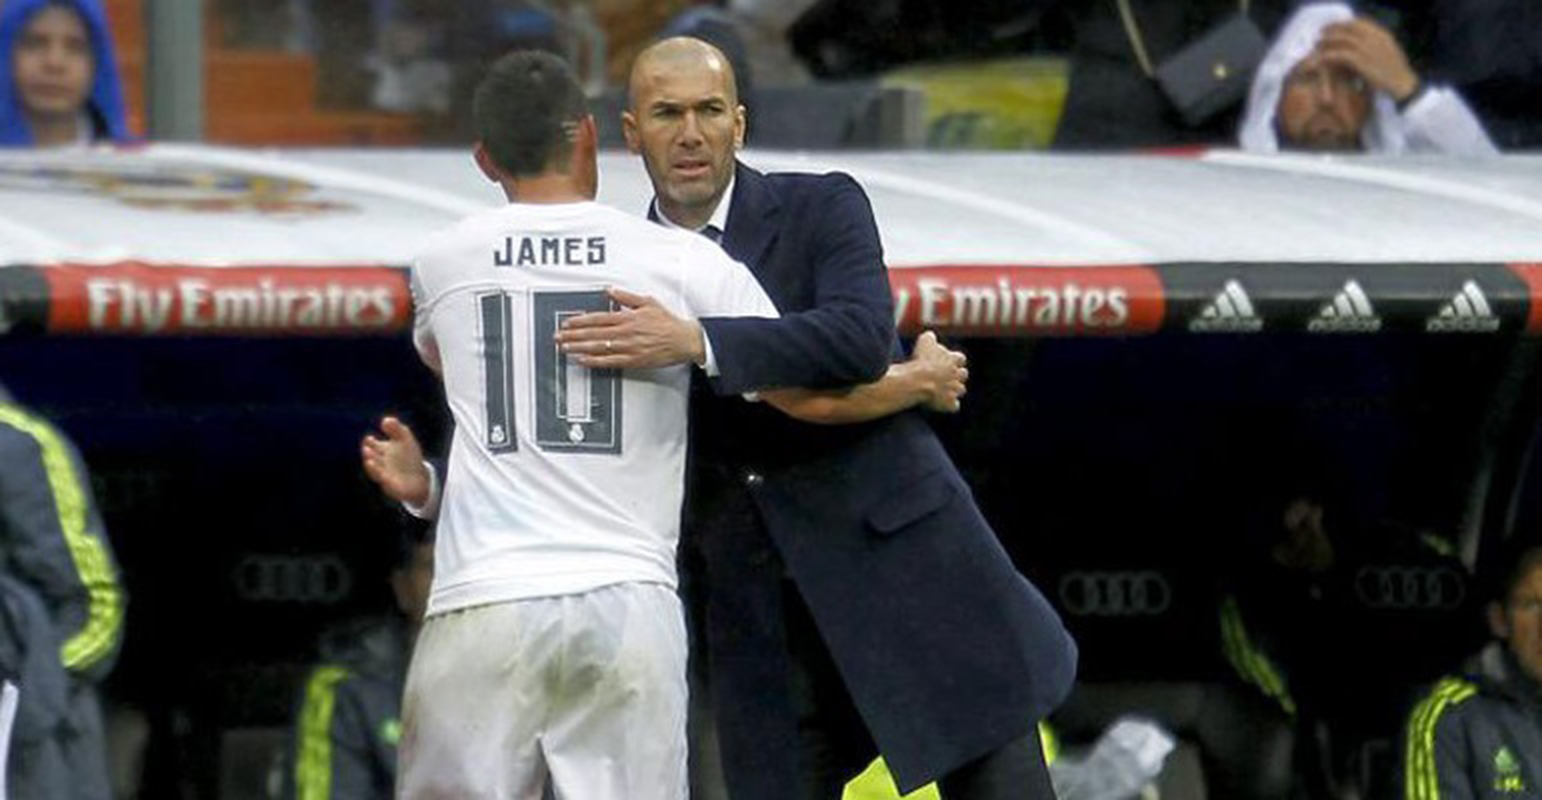 "Nunca he tenido un problema ni lo voy a tener" con James, asegura Zidane